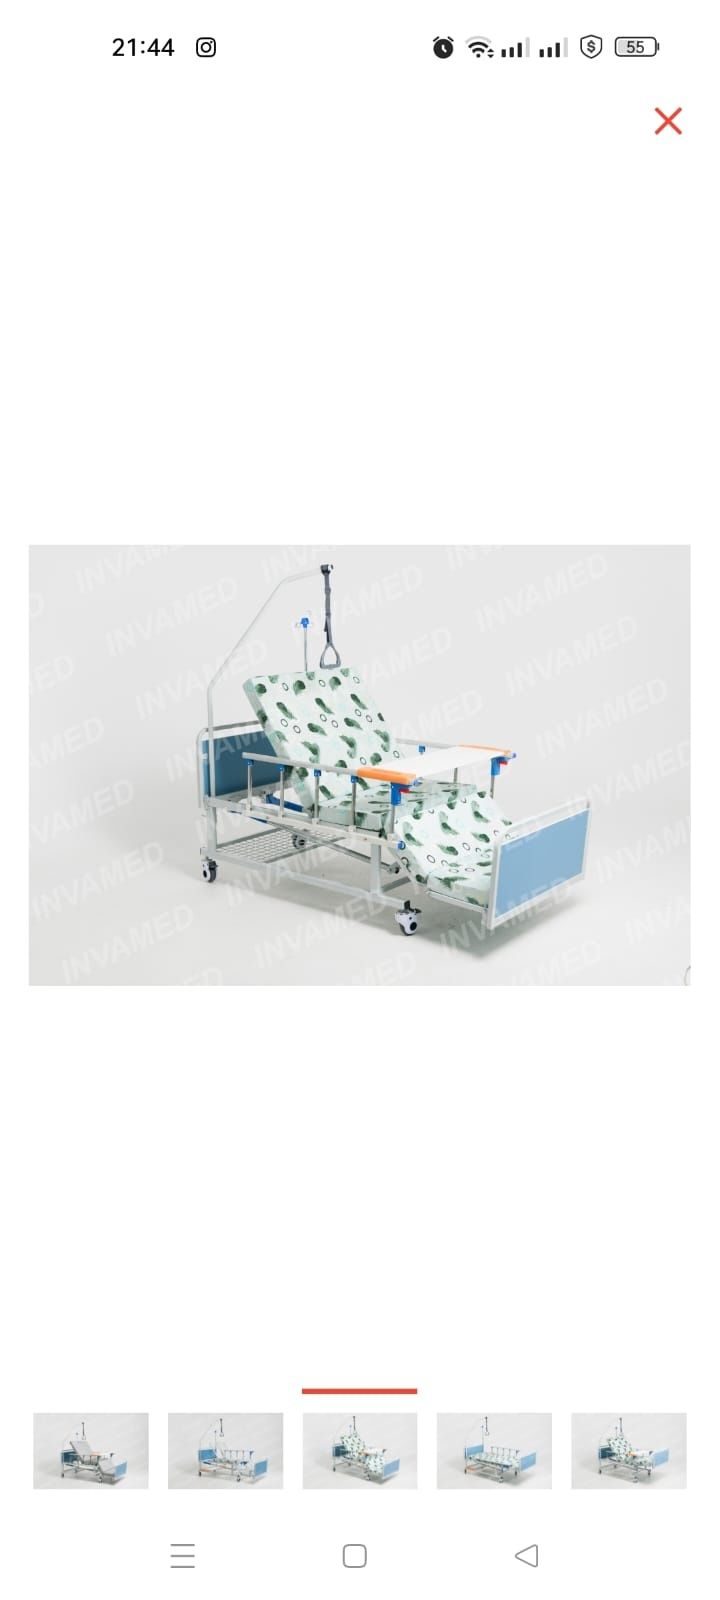 Кровать INVAMED Медицинская кровать КФ-3 механическая 180 кг